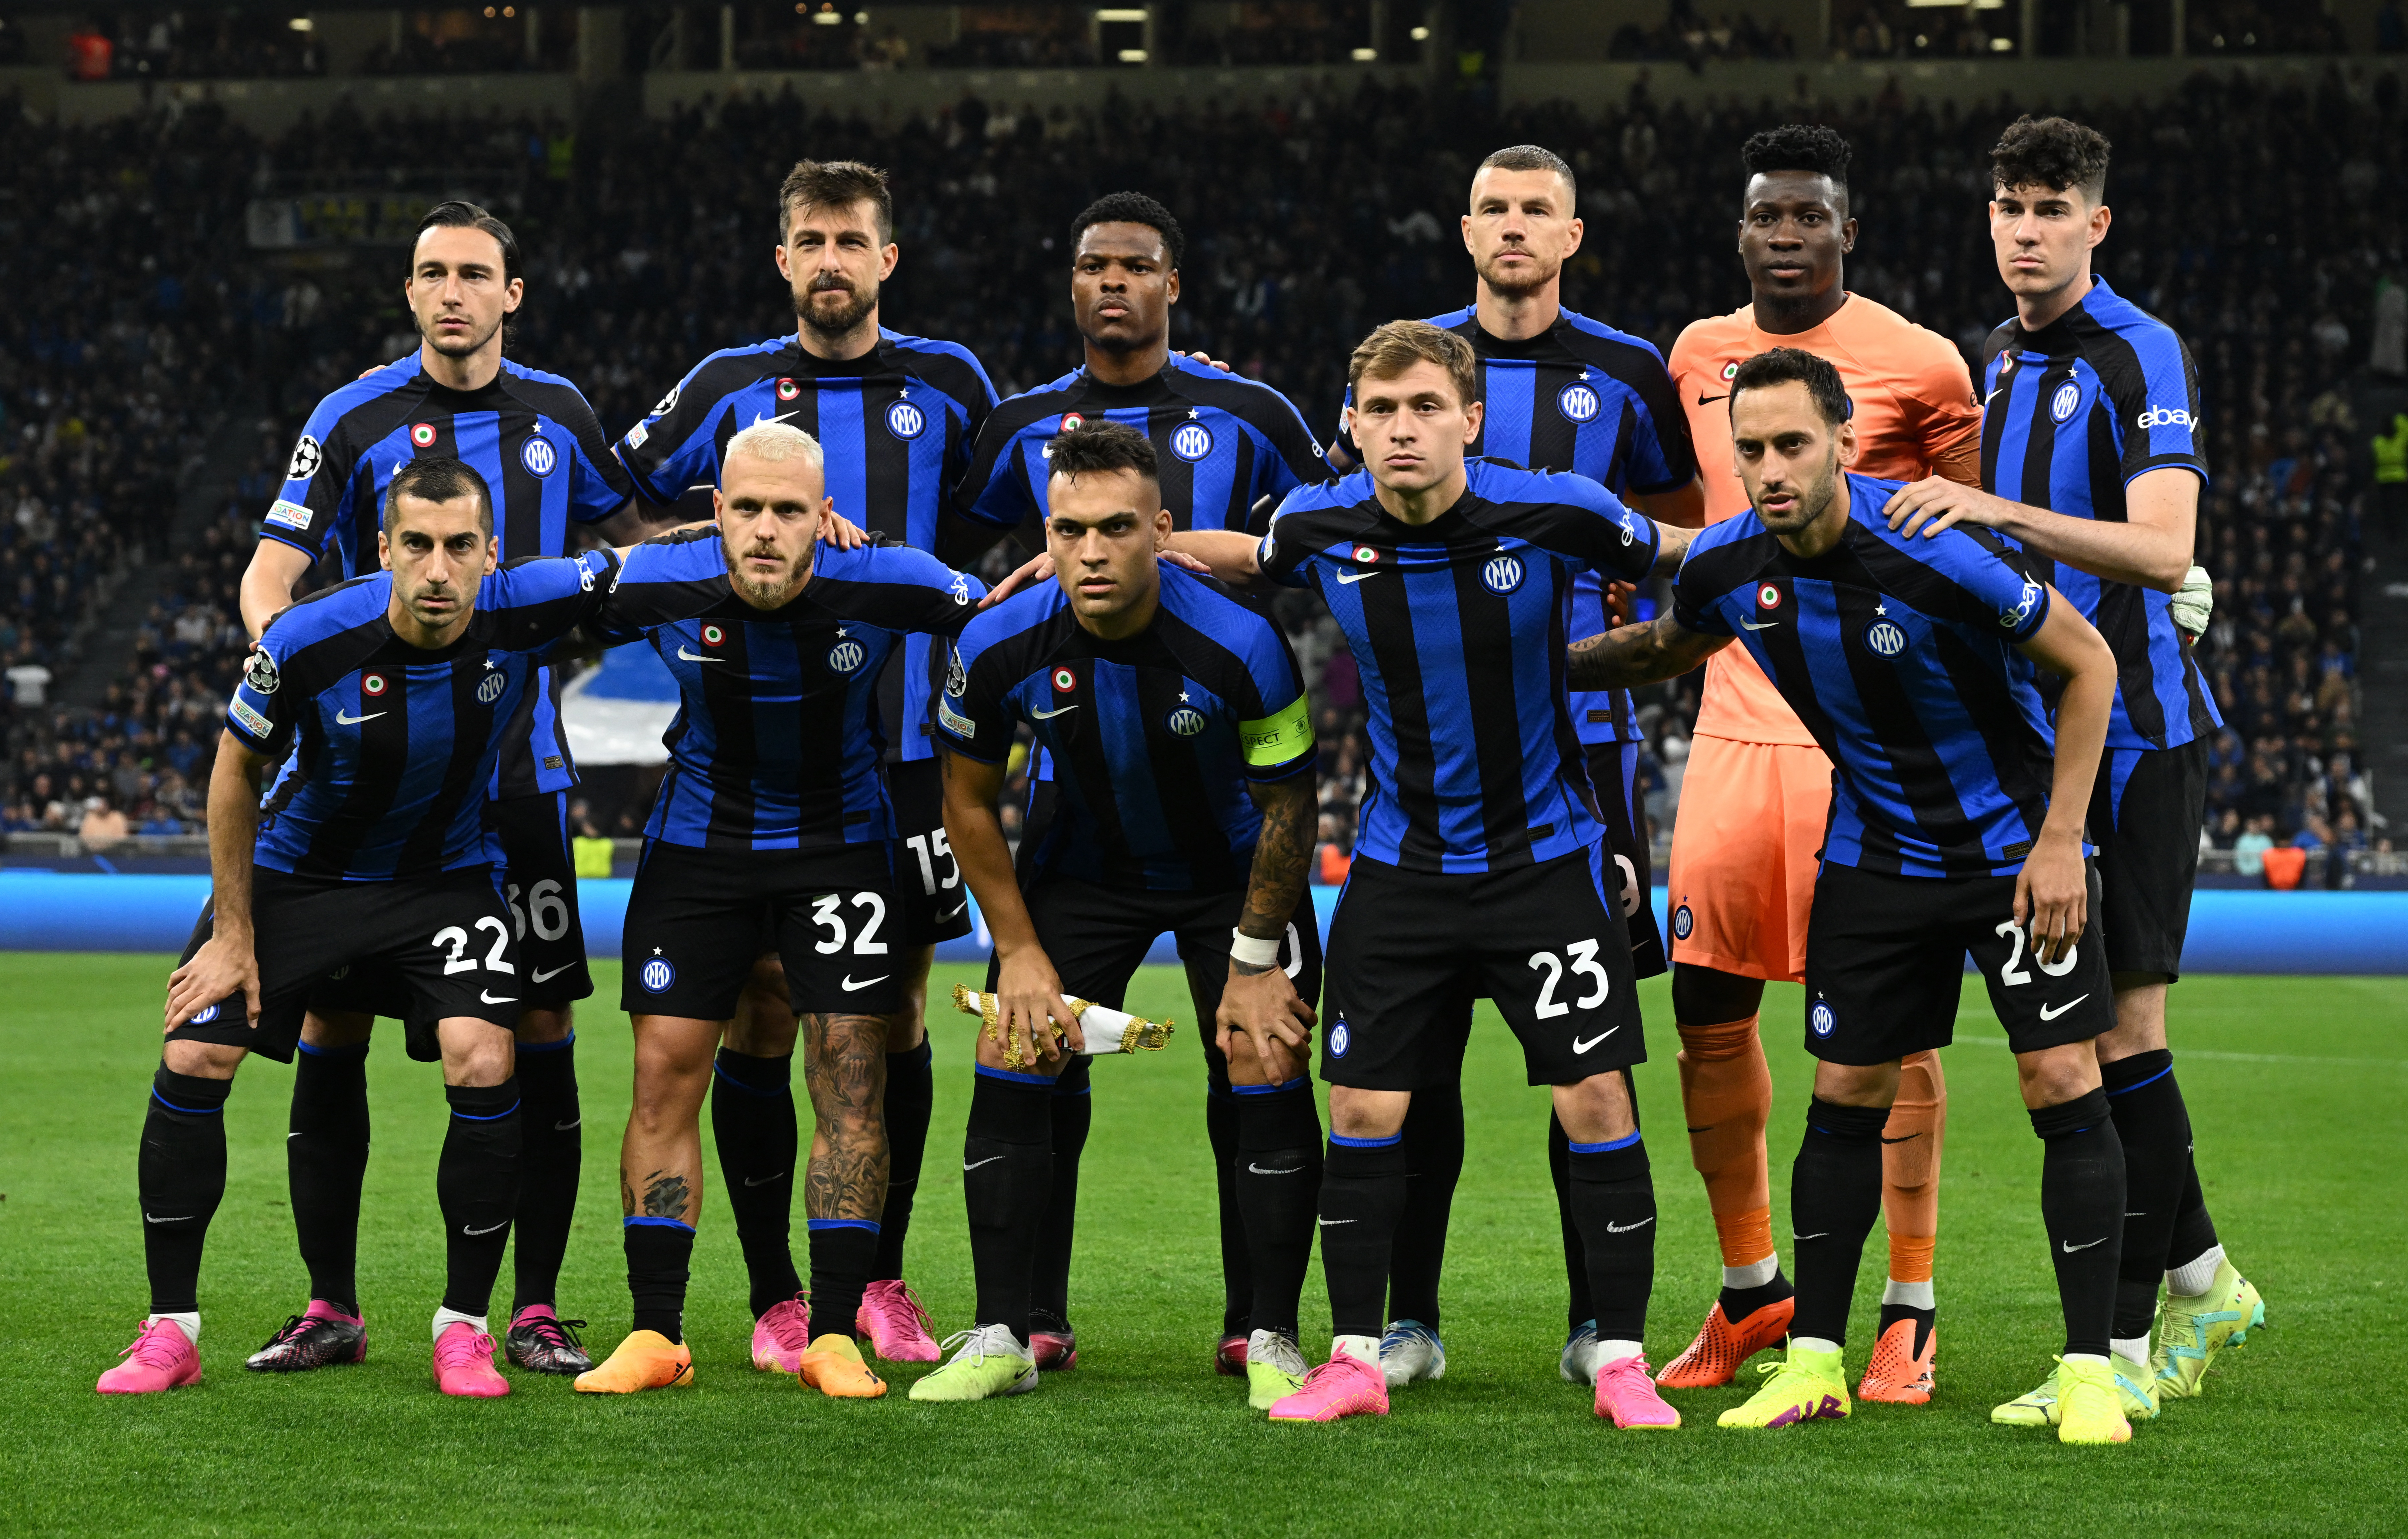 Inter eliminó al Milan en las semifinales de la Champions League y volverá a estar a un partido del título en Europa luego de 13 años (REUTERS/Alberto Lingria)